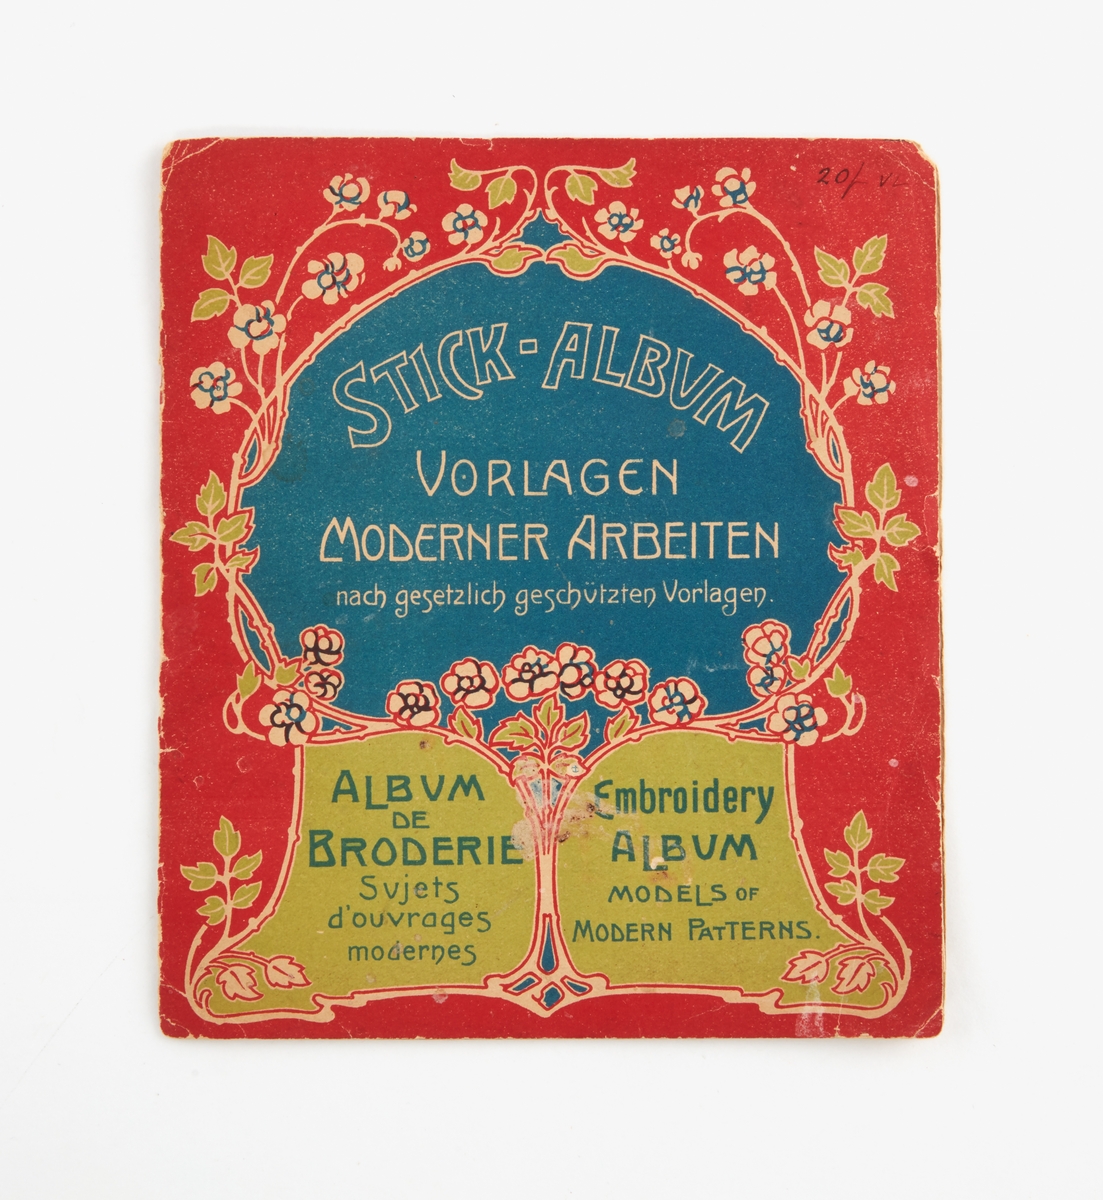 Mönsterbok "Stick-Album, Vorlagen Moderner Arbeiten. Nach gesetzlich geschützen Vorlagen". Printed in Bavaria.